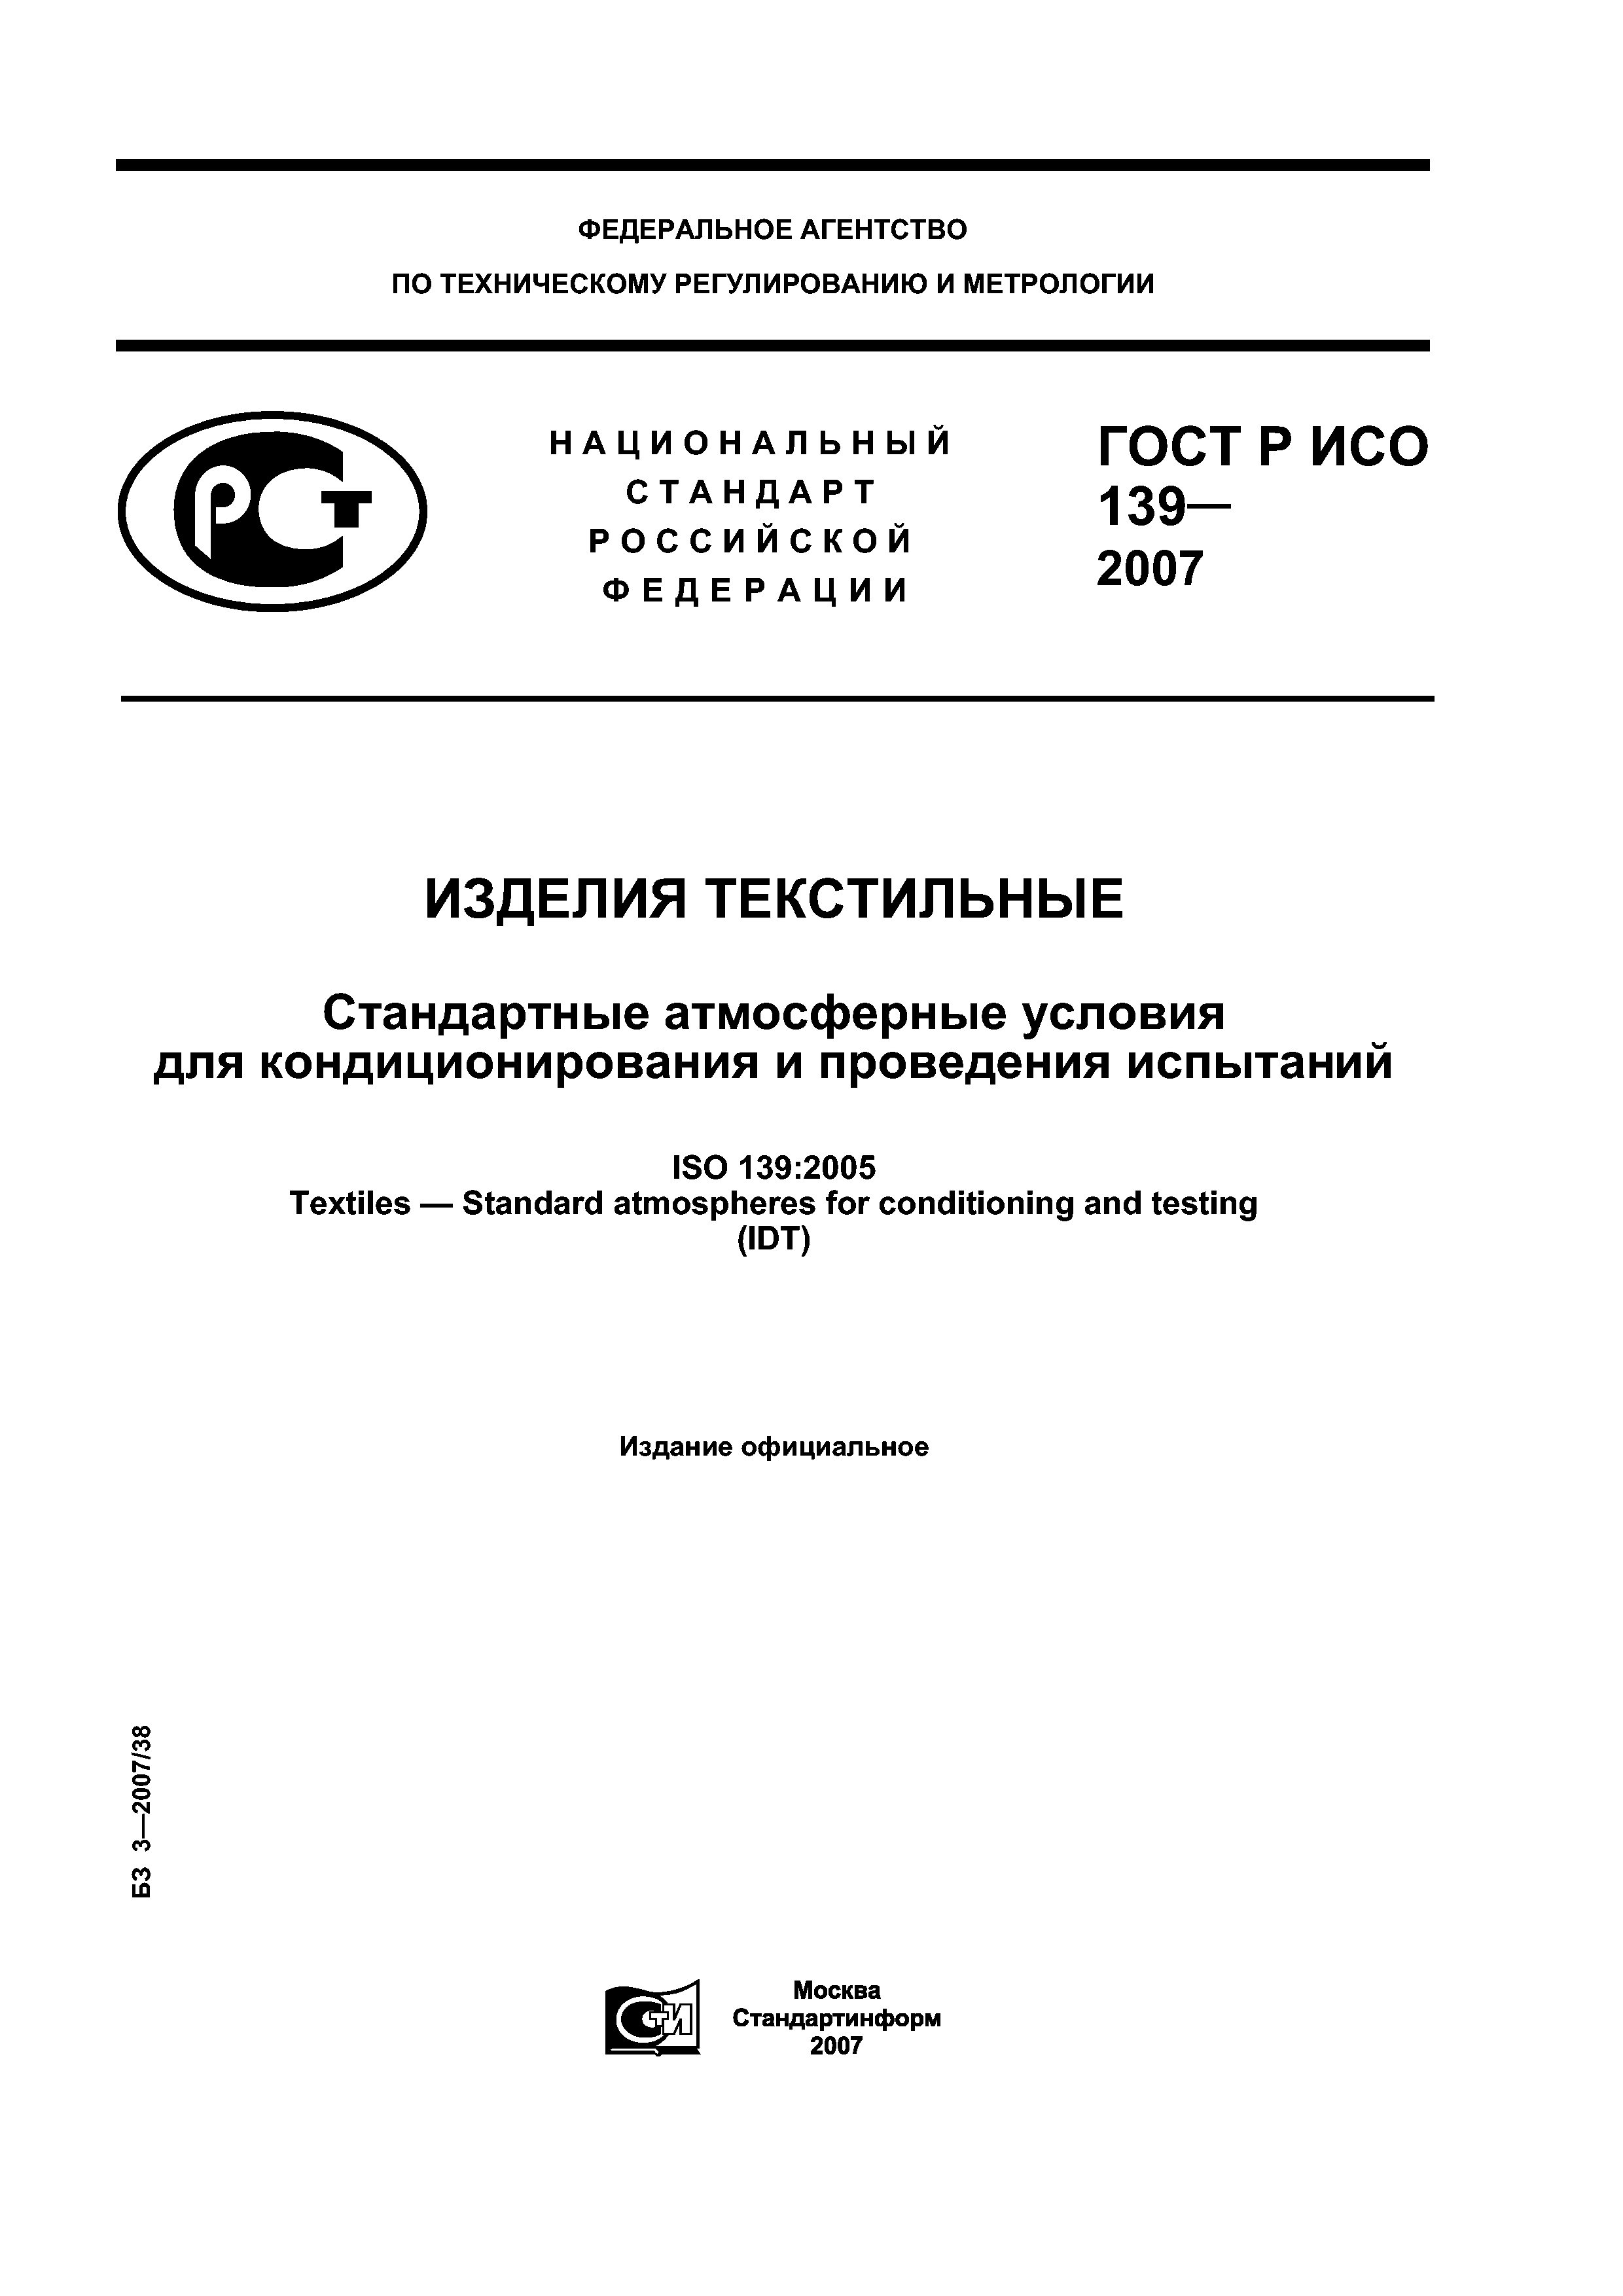 ГОСТ Р ИСО 139-2007